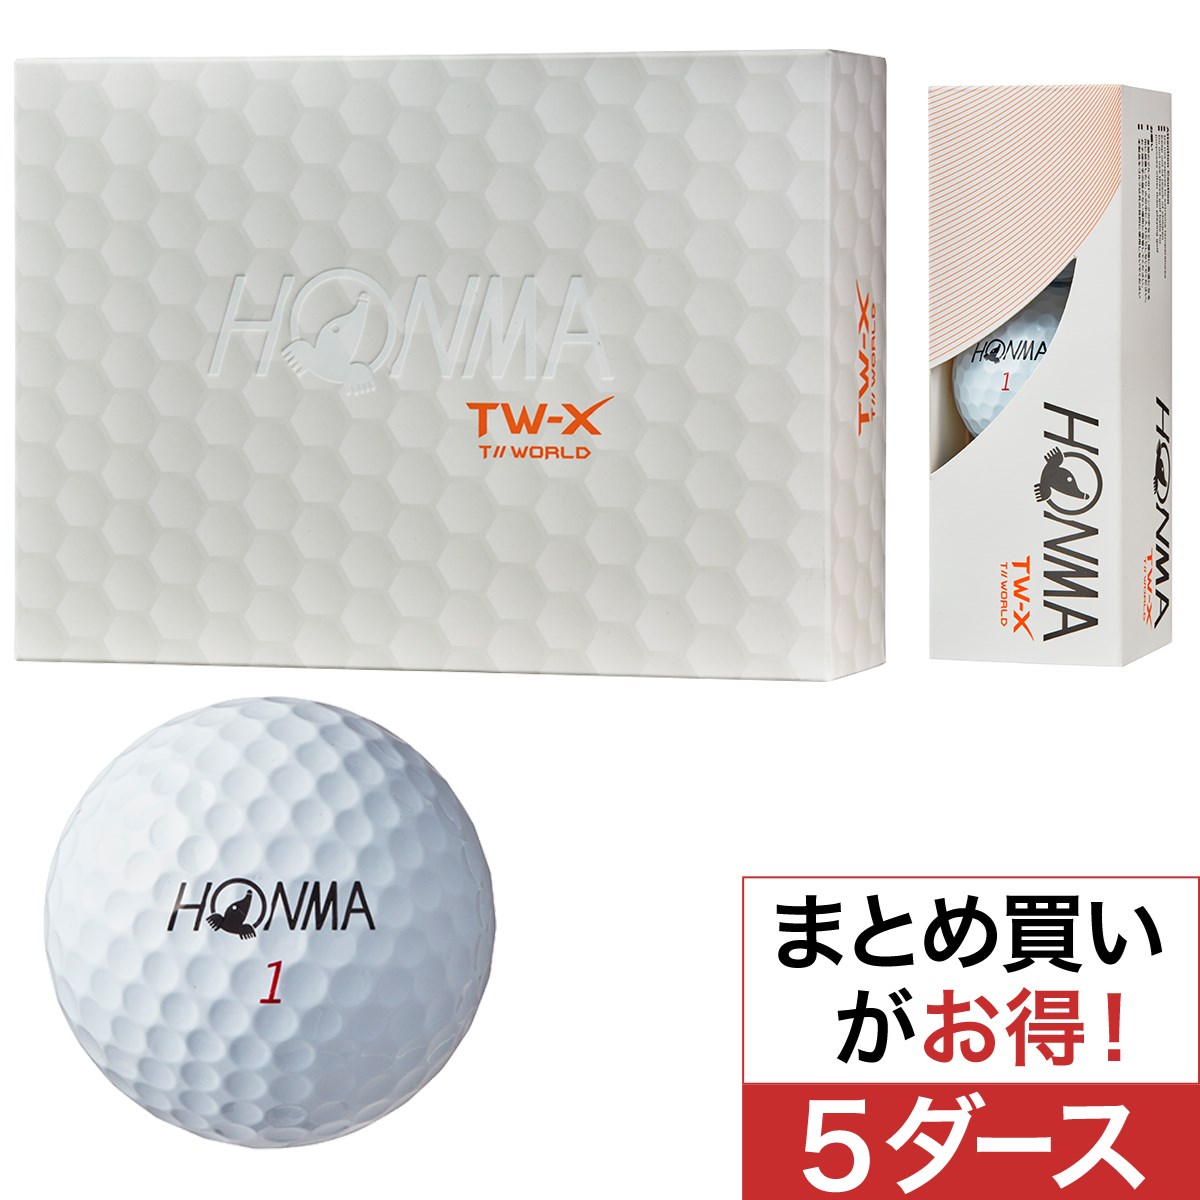 Tw X ボール 5ダースセット 本間ゴルフ Honma 通販 Gdoゴルフショップ